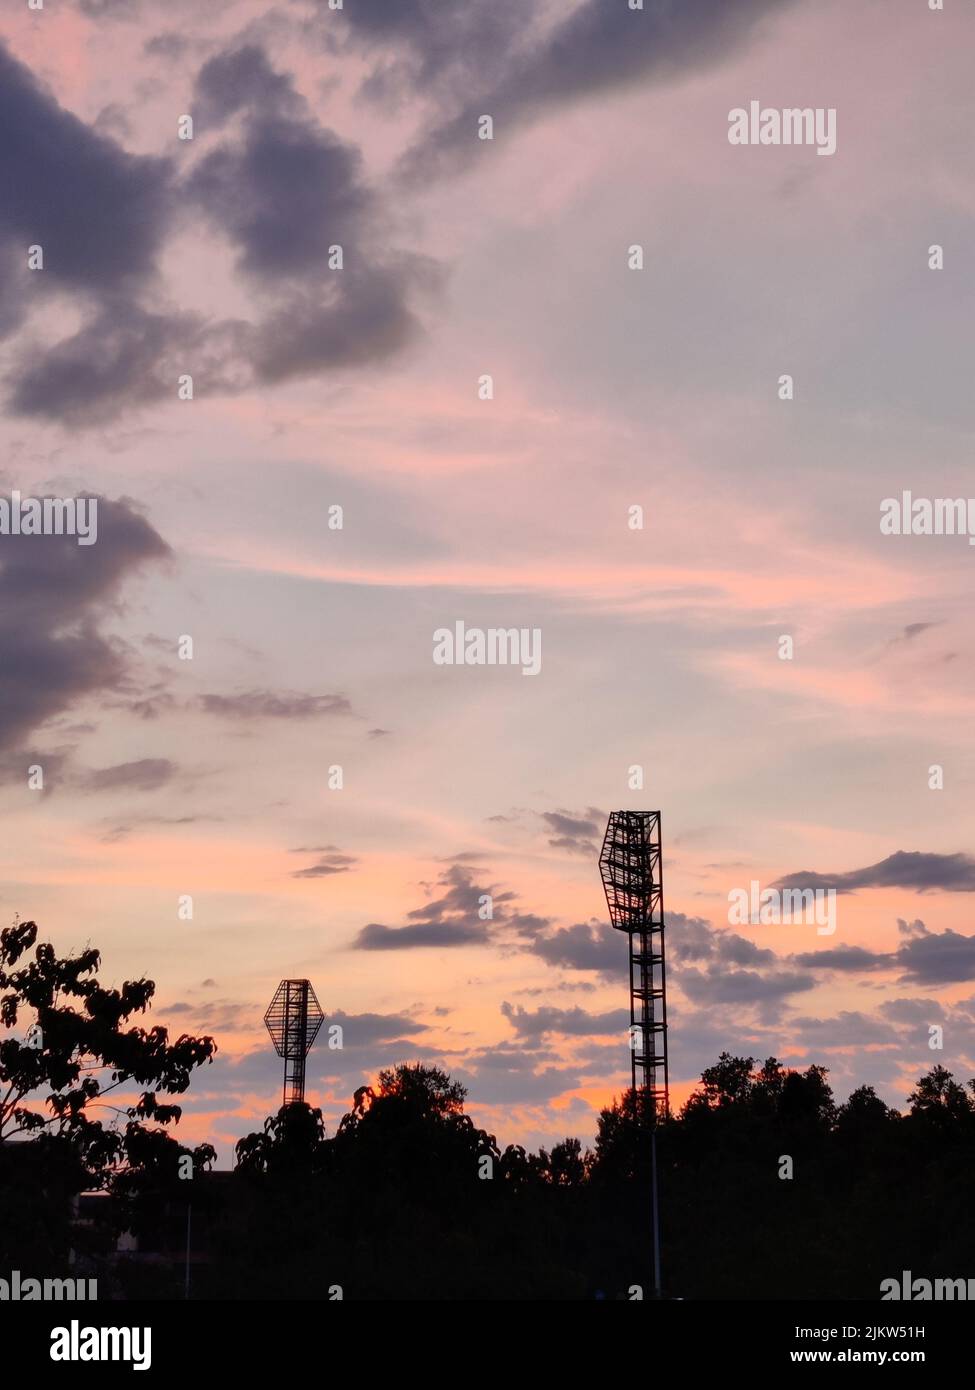 Wunderschöne rosa und orange Sonnenuntergang hinter dem Plovdiv Stadion. Magische Stunde. Lichttürme gesehen. Romantische Industrie. Stockfoto